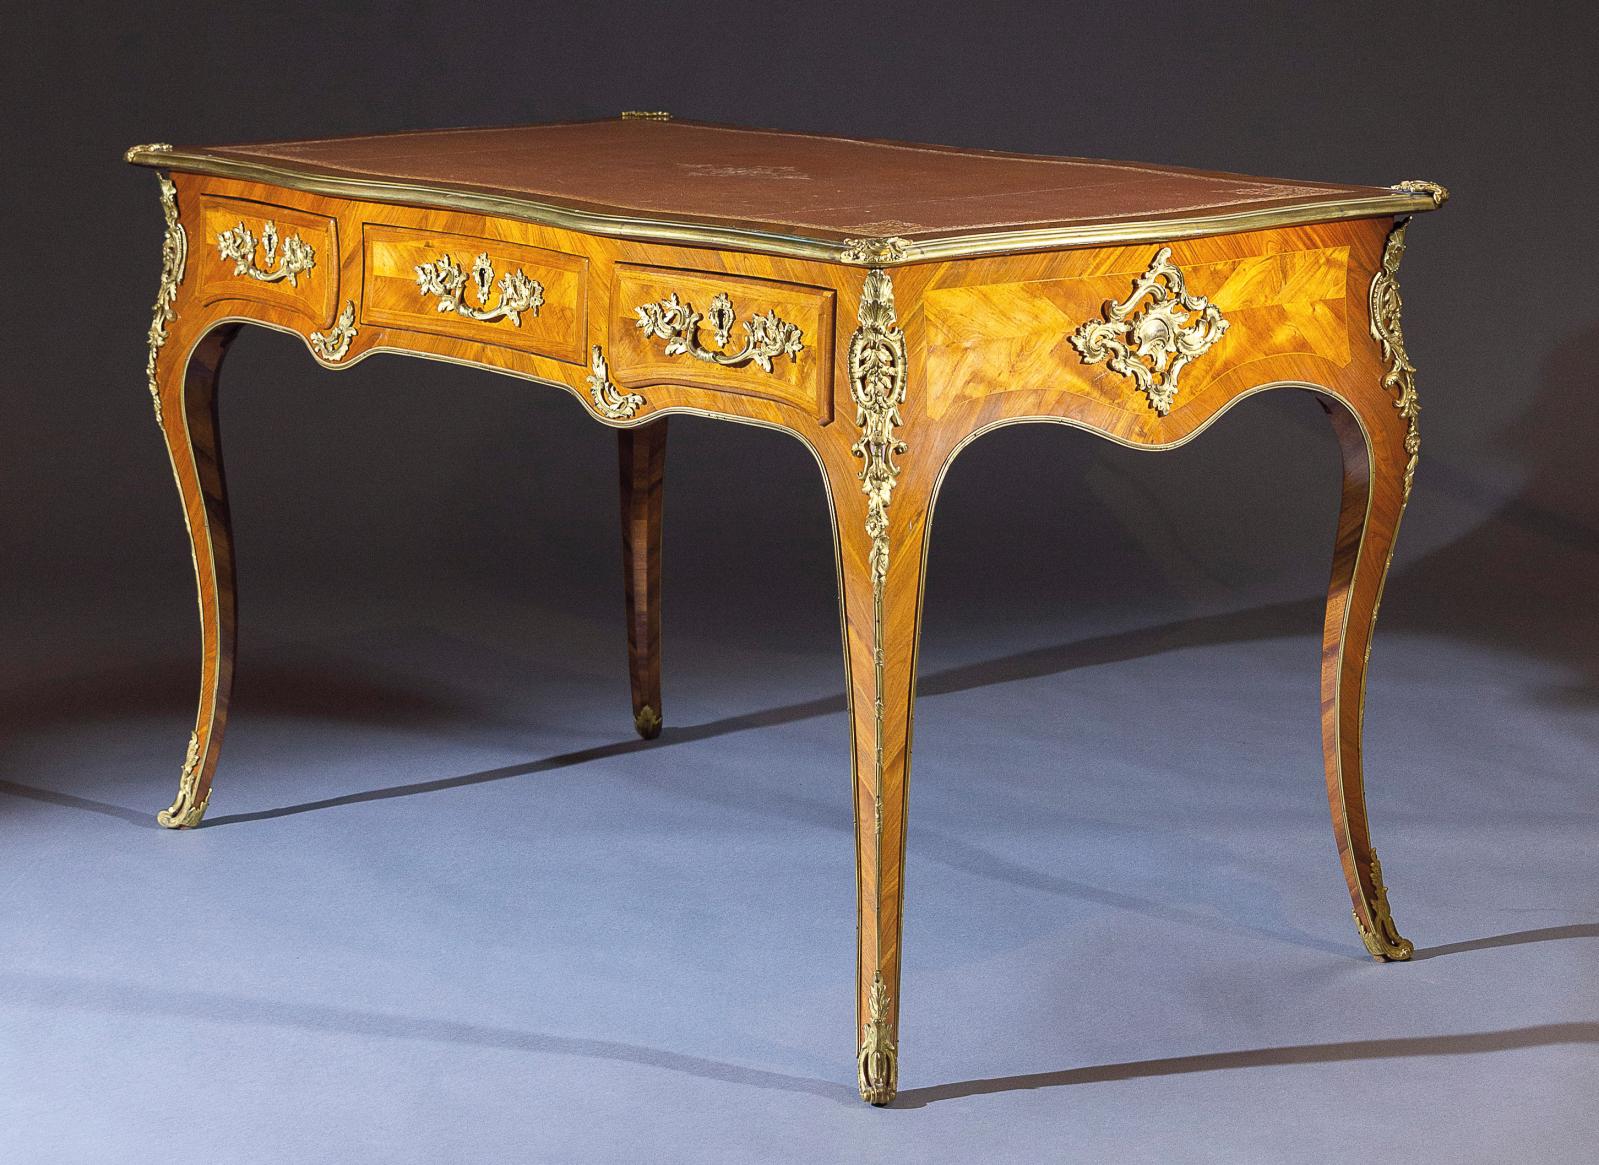 Époque Louis XV. Bureau plat en bois de rose et bois de violette, bronzes dorés, estampille de Pierre Roussel et JME, 79 x 133 x 76,5 cm. 